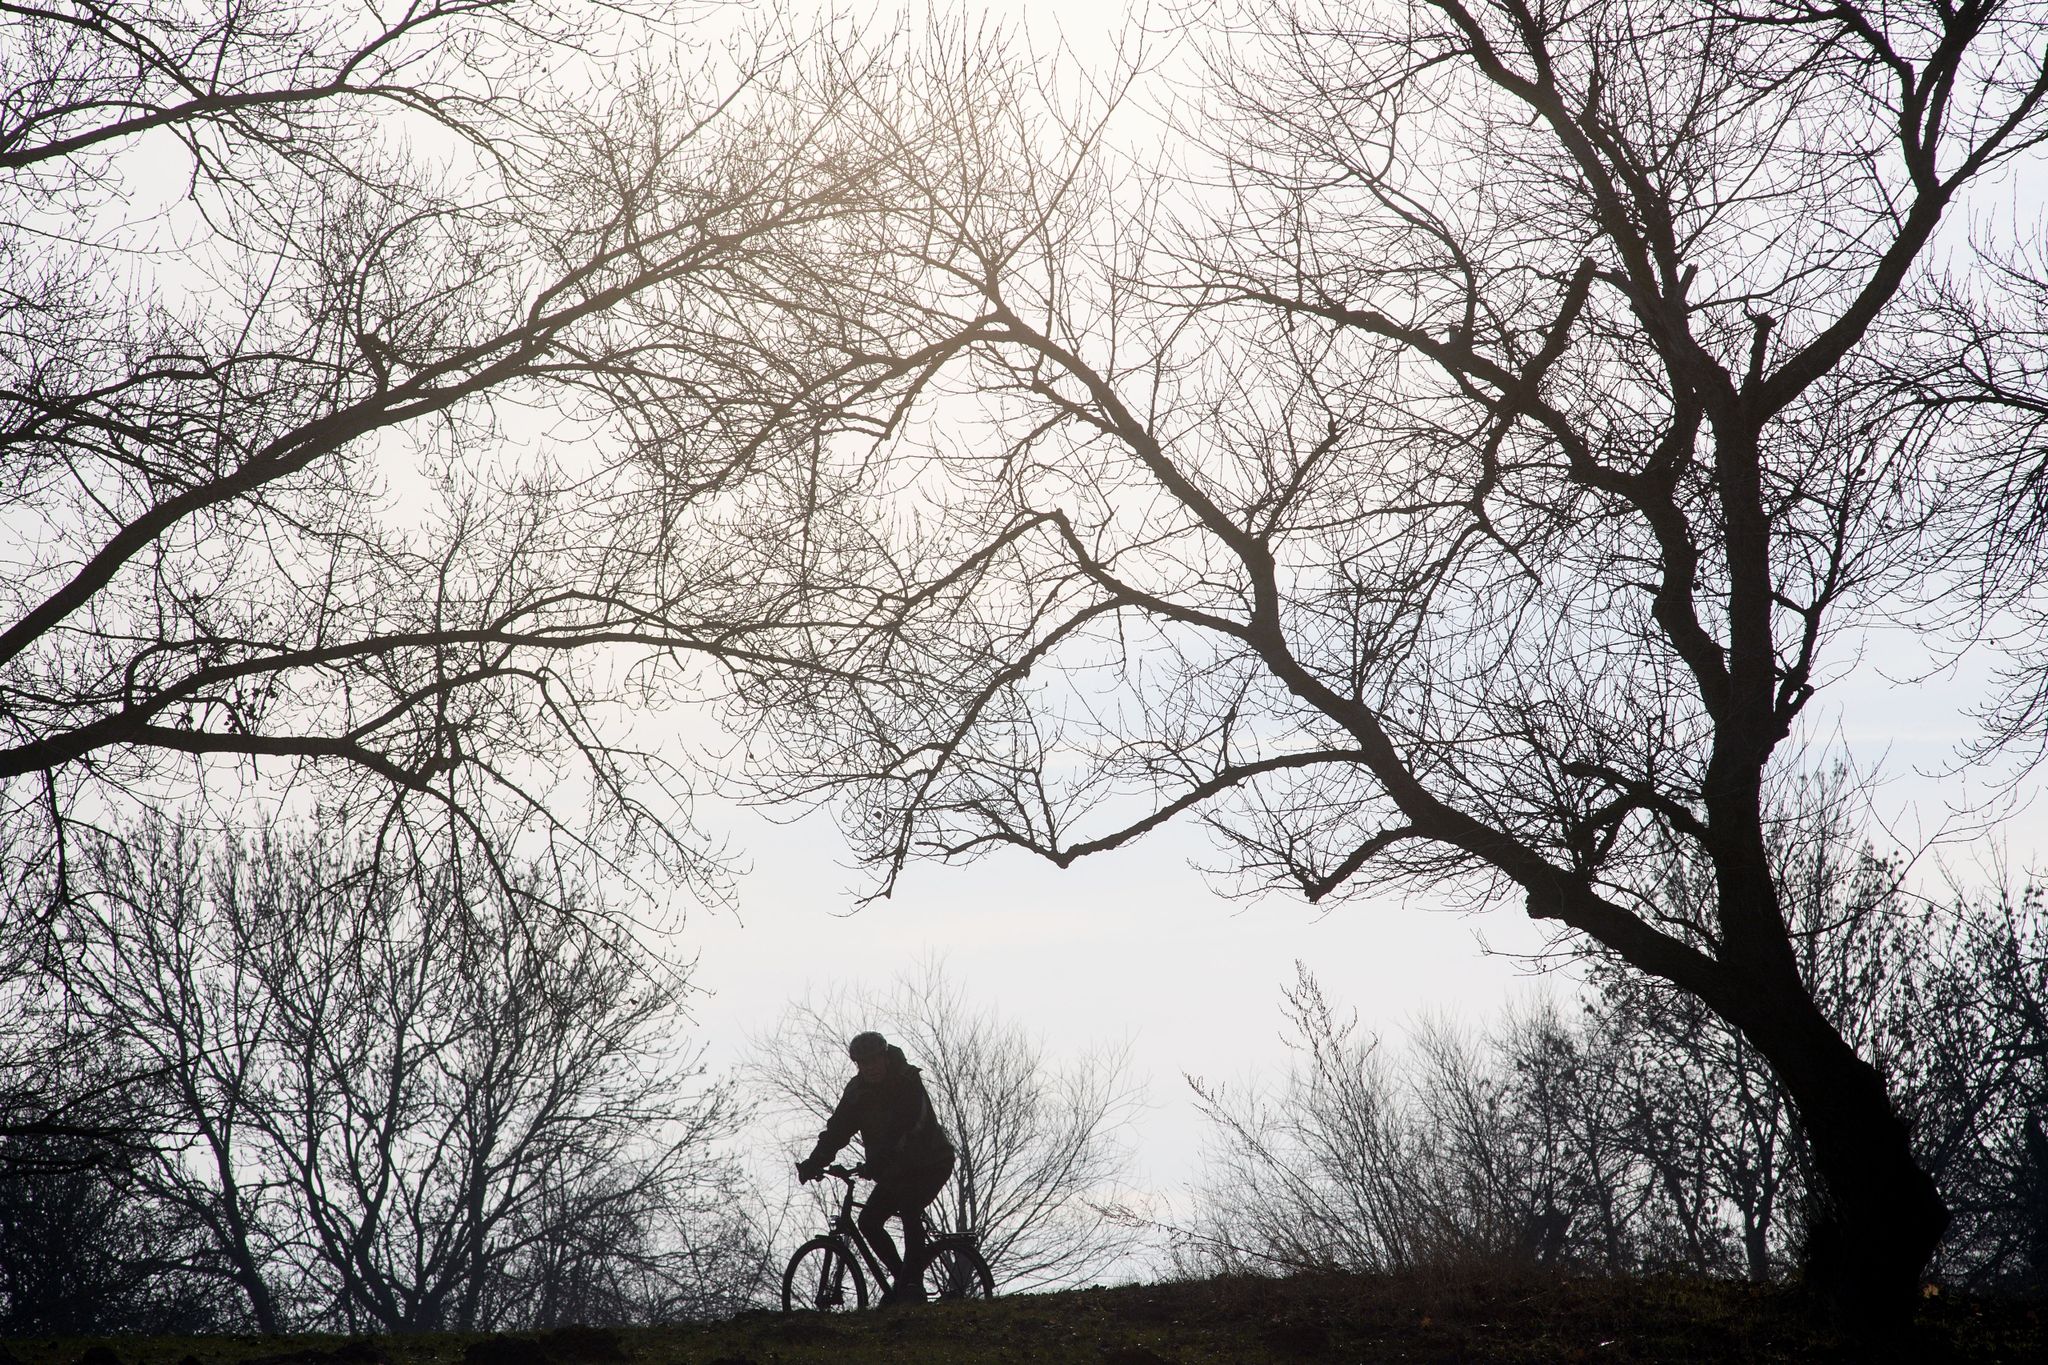 Ein Radfahrer fährt unter winterkahlen Bäumen hindurch.